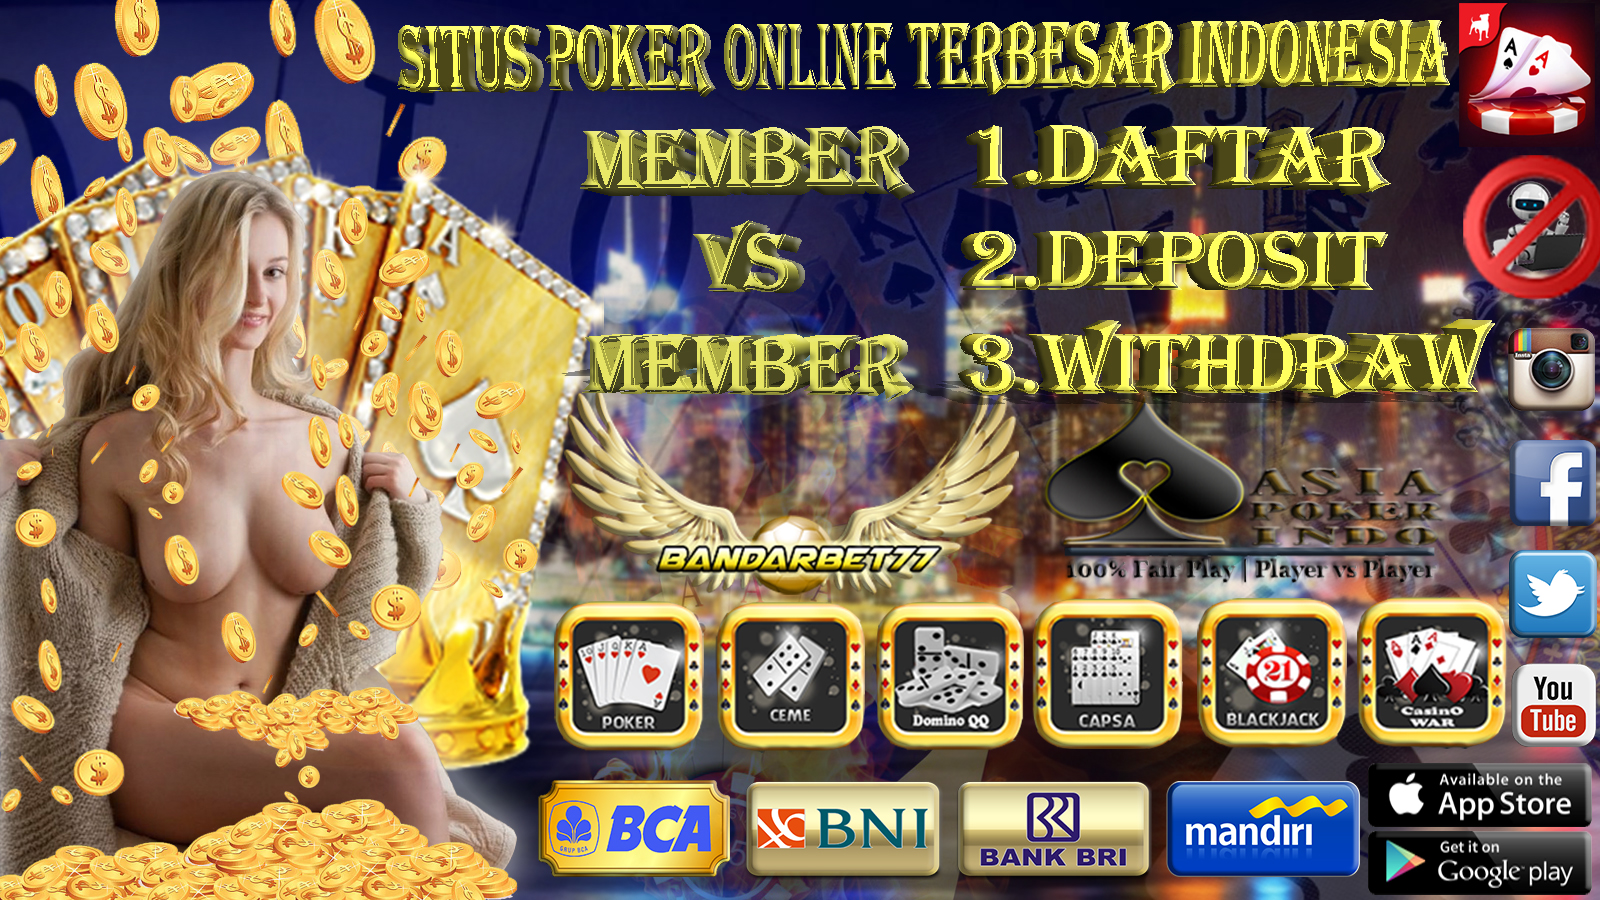 Indonesia No 2 Sebagai Negara Terbesar Mengakses Poker Online